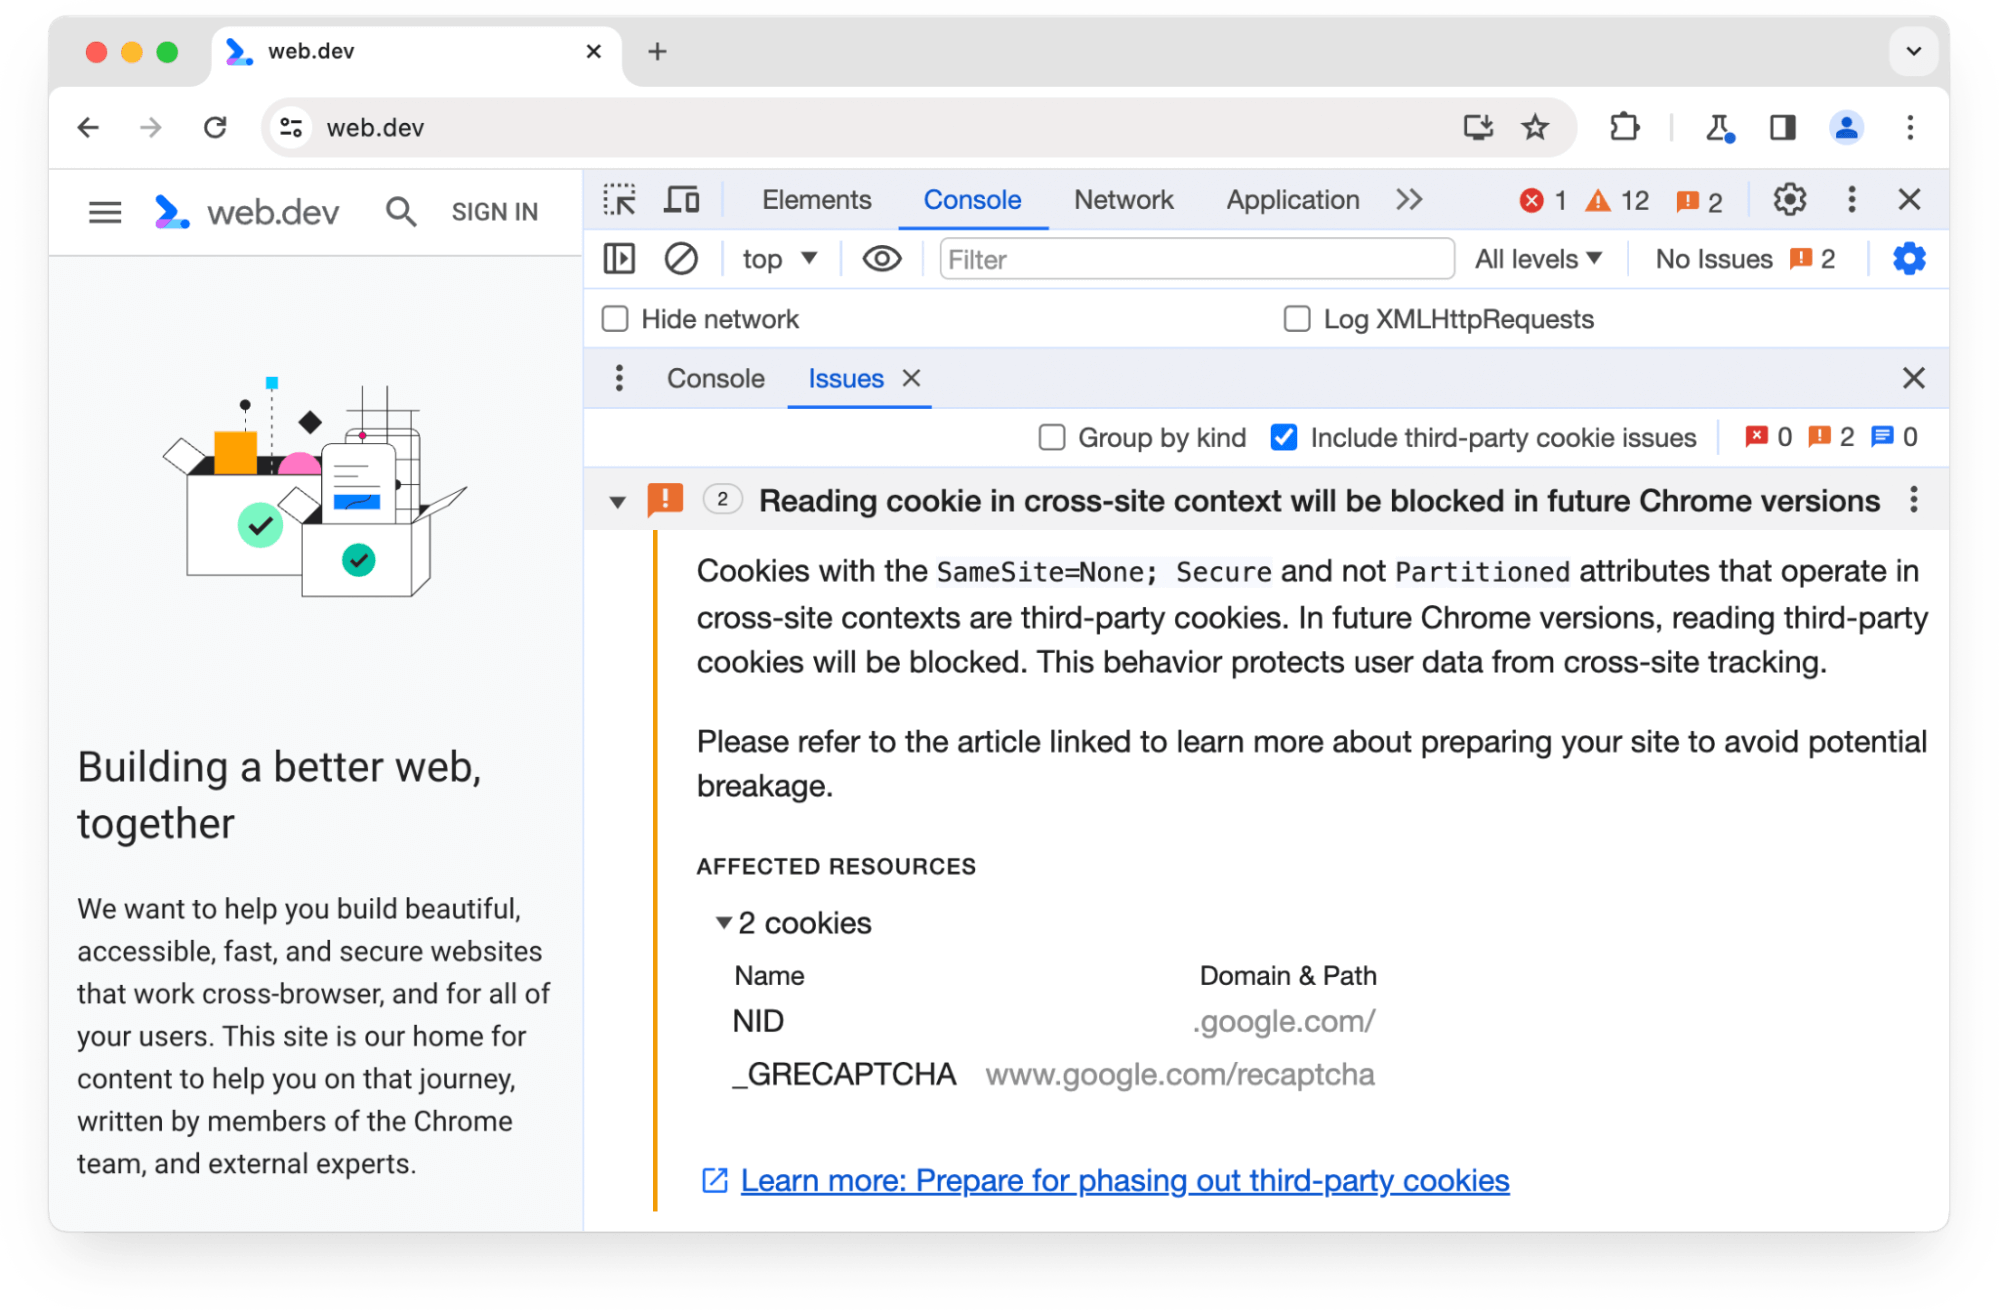 Panel Chrome DevTools Issues memperingatkan tentang 2 cookie pihak ketiga yang akan diblokir di Chrome versi mendatang.